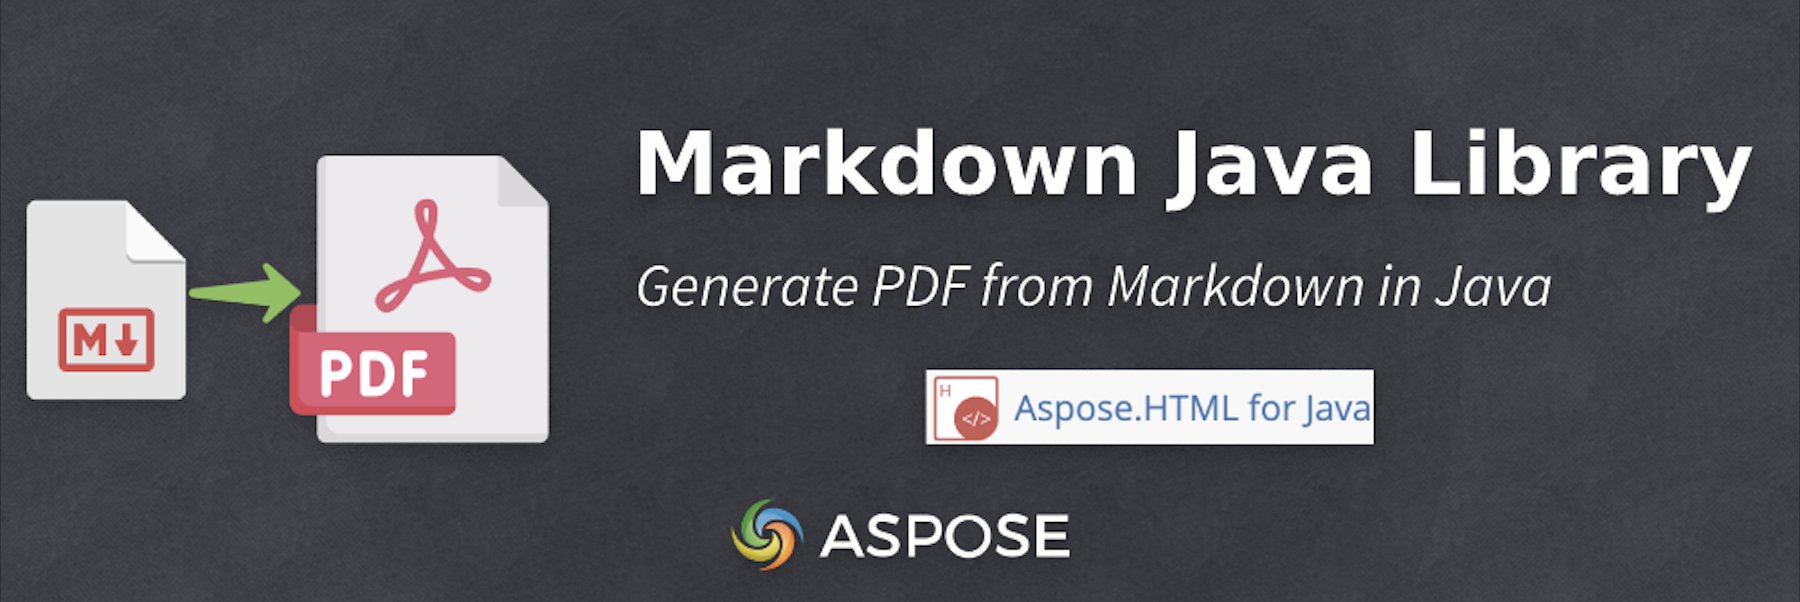 PDF aus Markdown in Java generieren - Markdown zu PDF